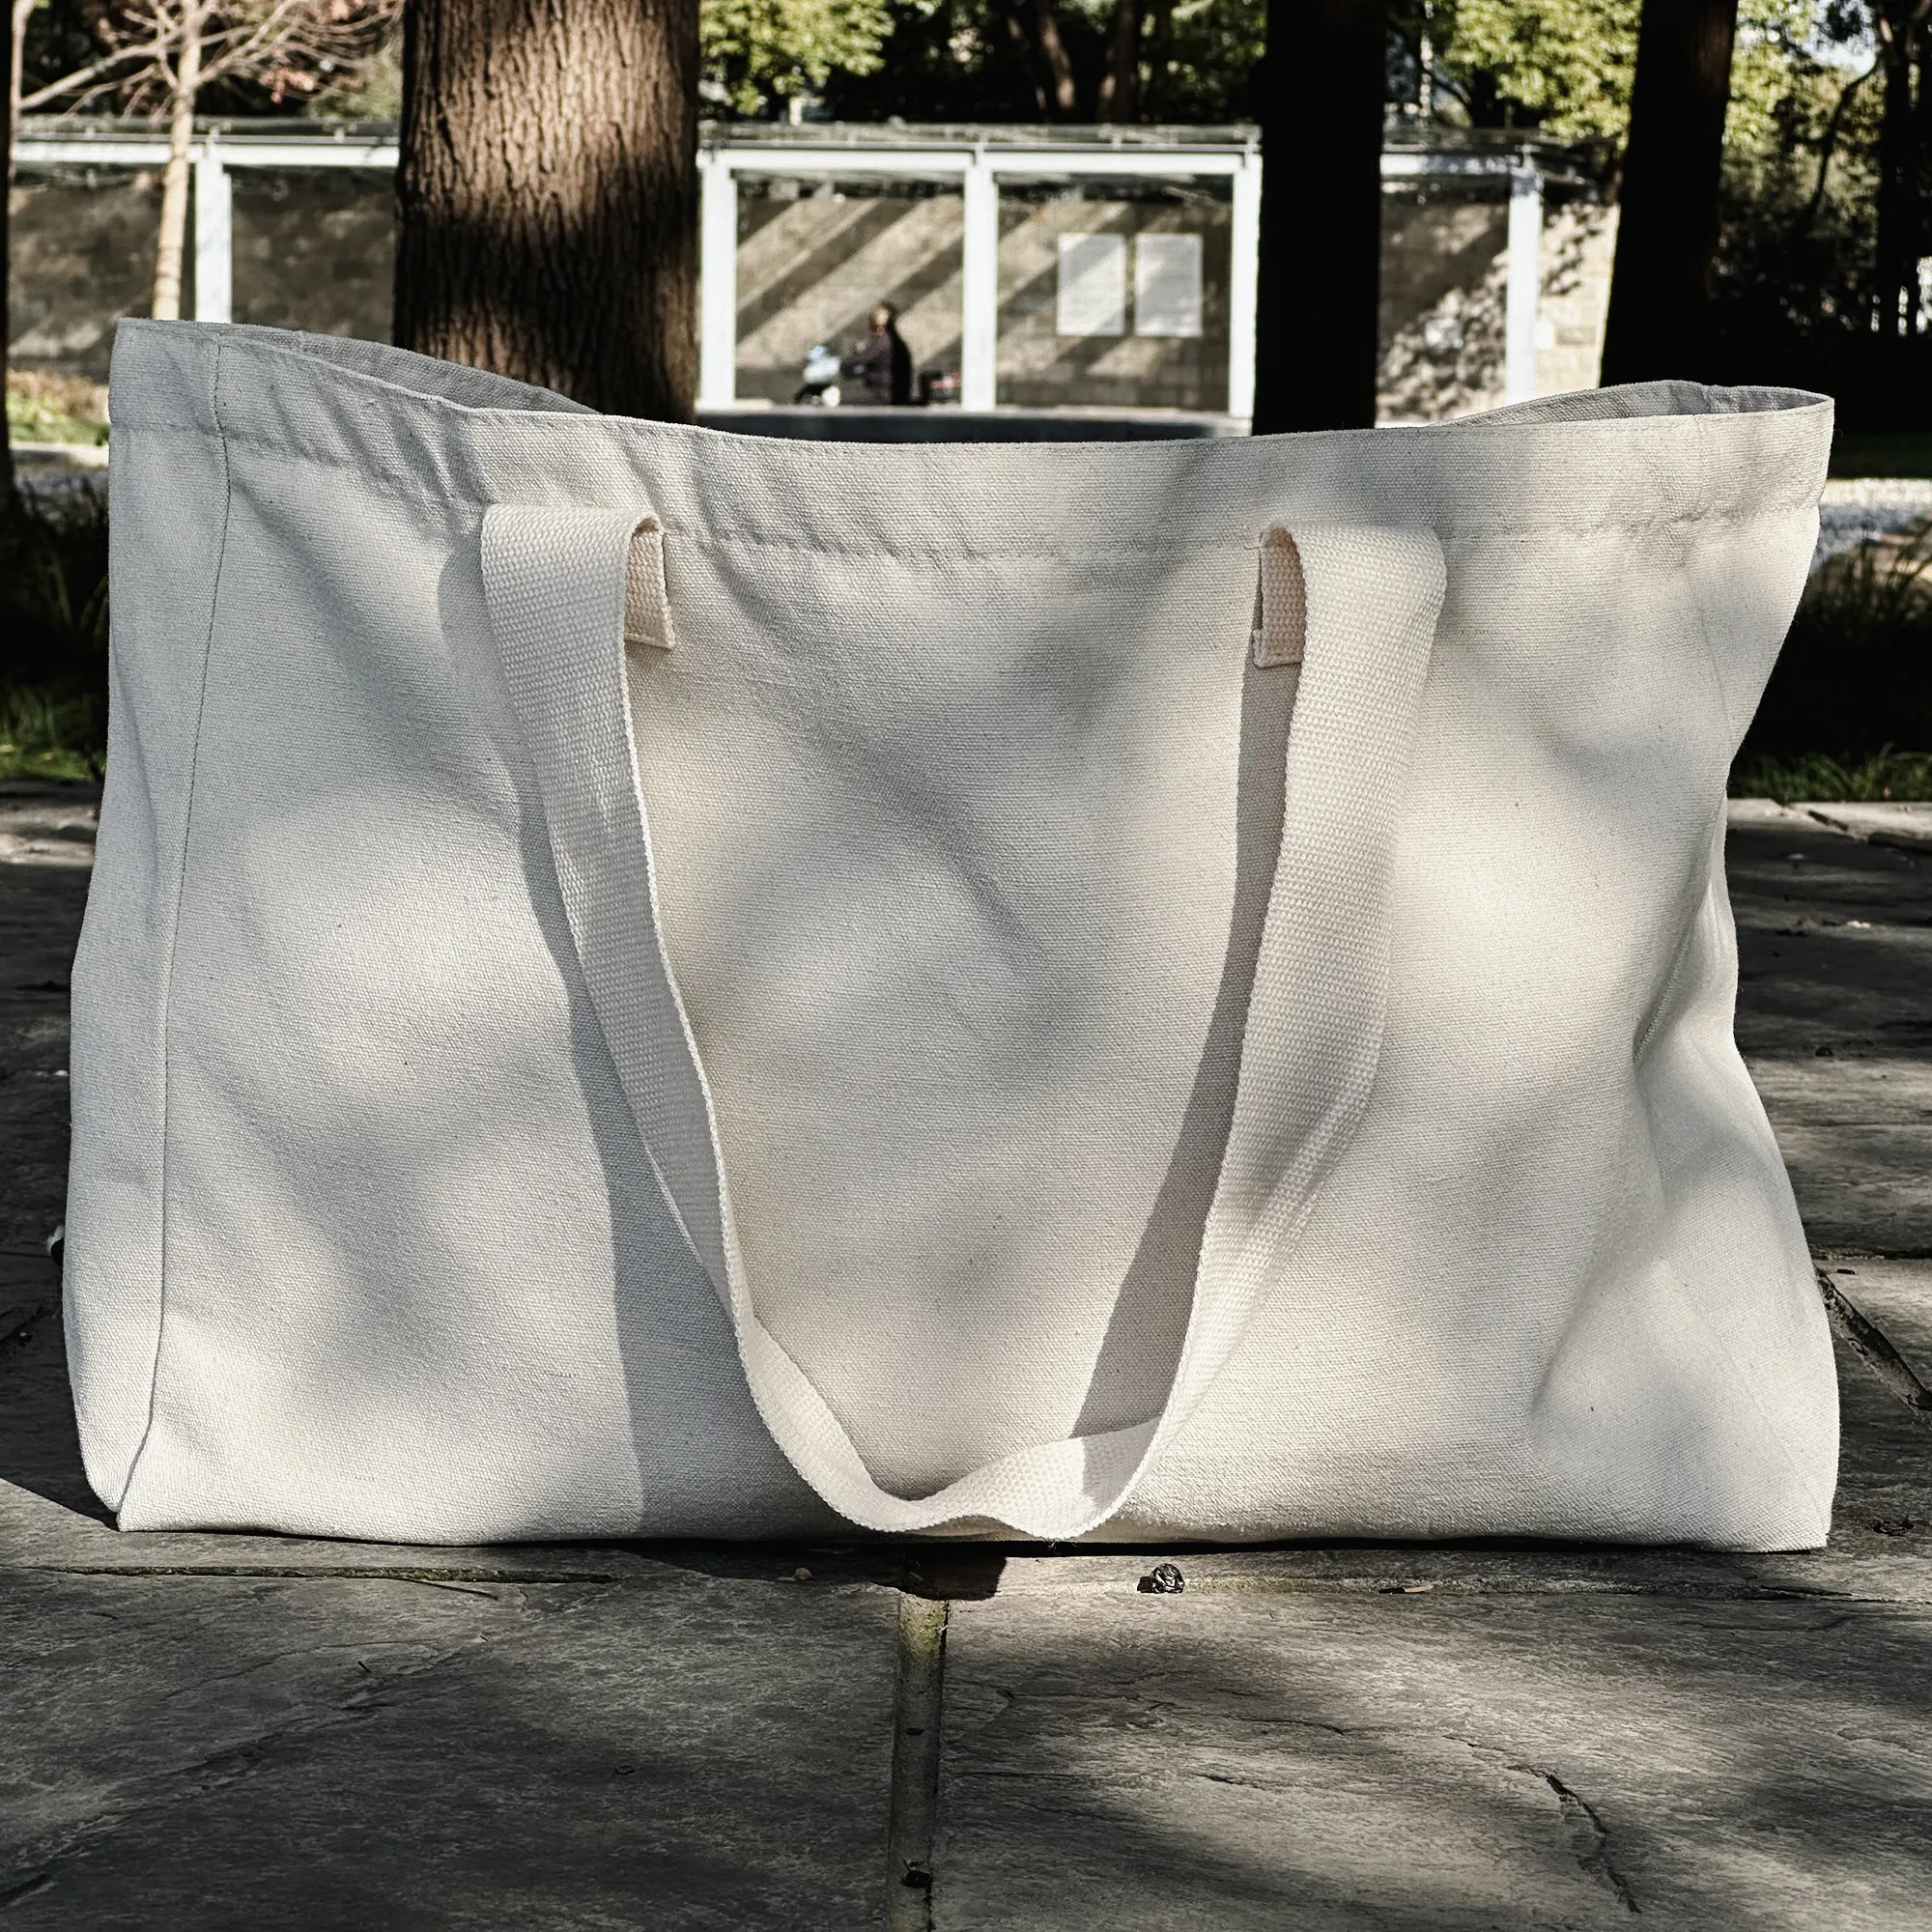 Venta al por mayor de bolsas de playa de algodón, bolsas de lona de tamaño personalizado